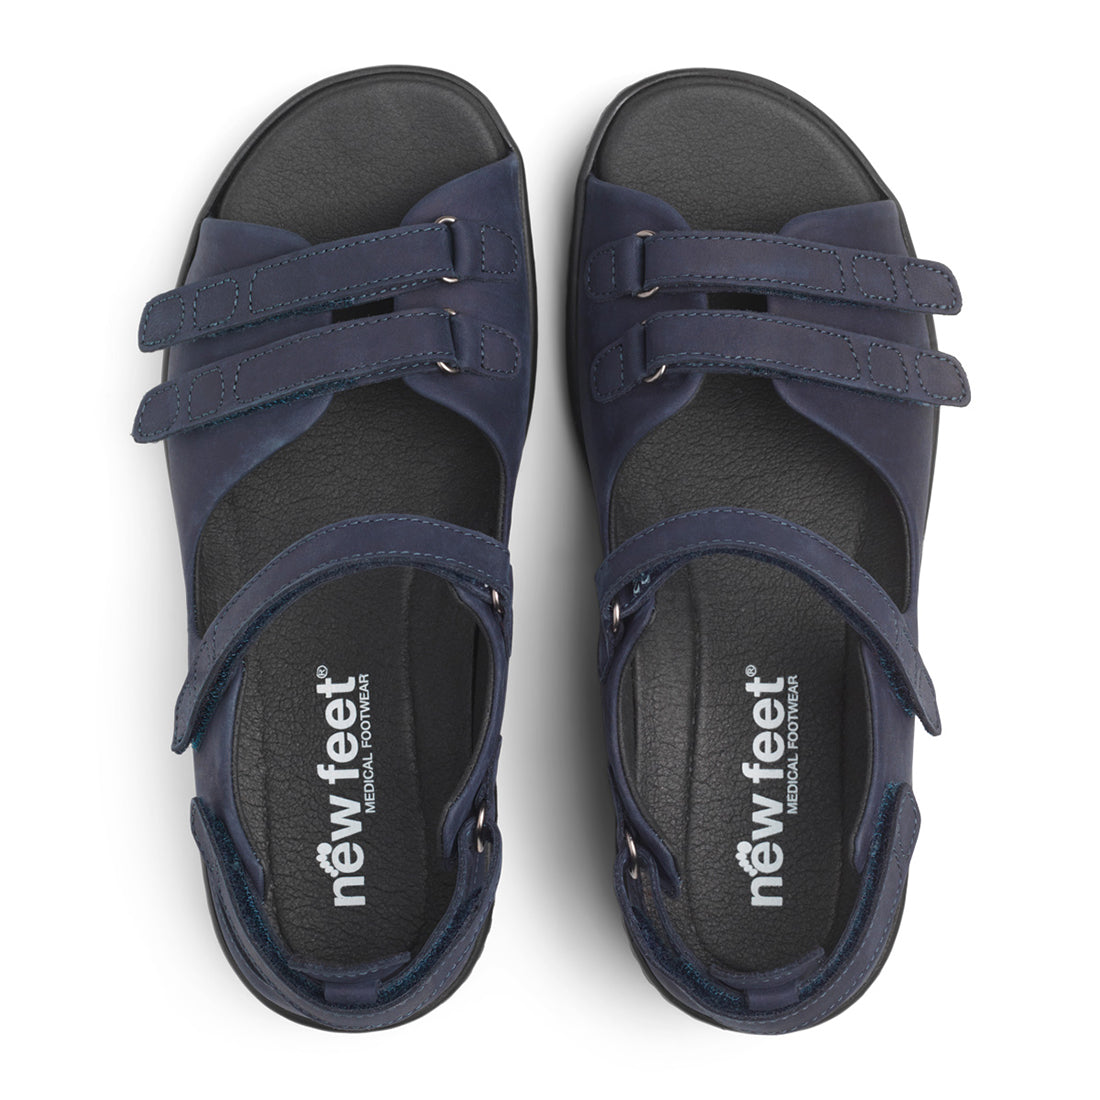 Sandaler | Smart komfort, også til der driller. Prøv gratis